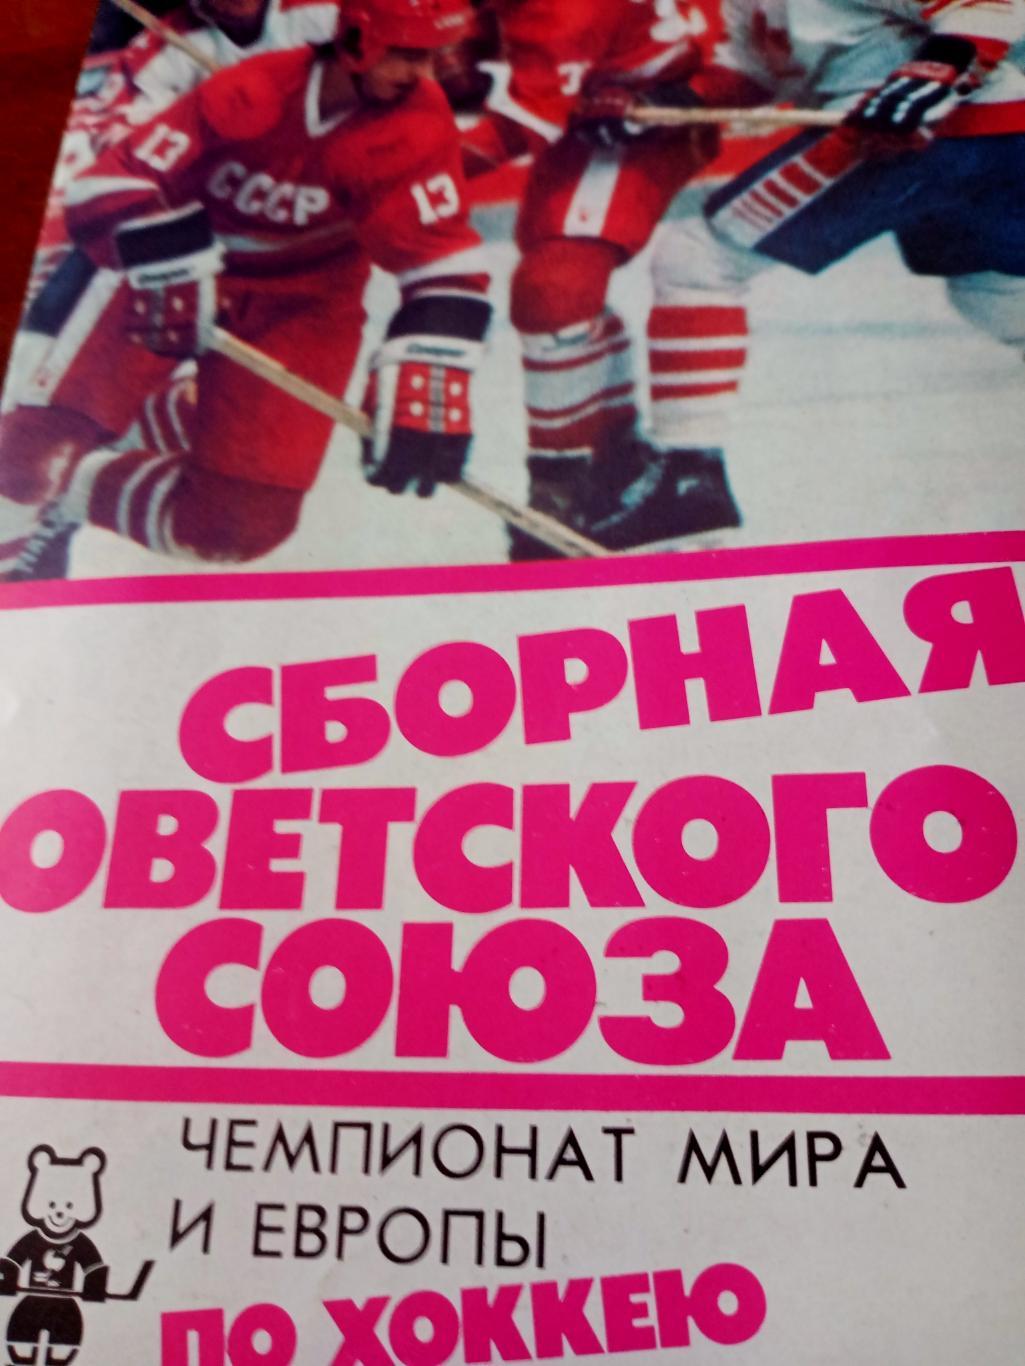 Чемпионат мира и Европы. Хоккей. Москва. 1986 год. Сборная СССР